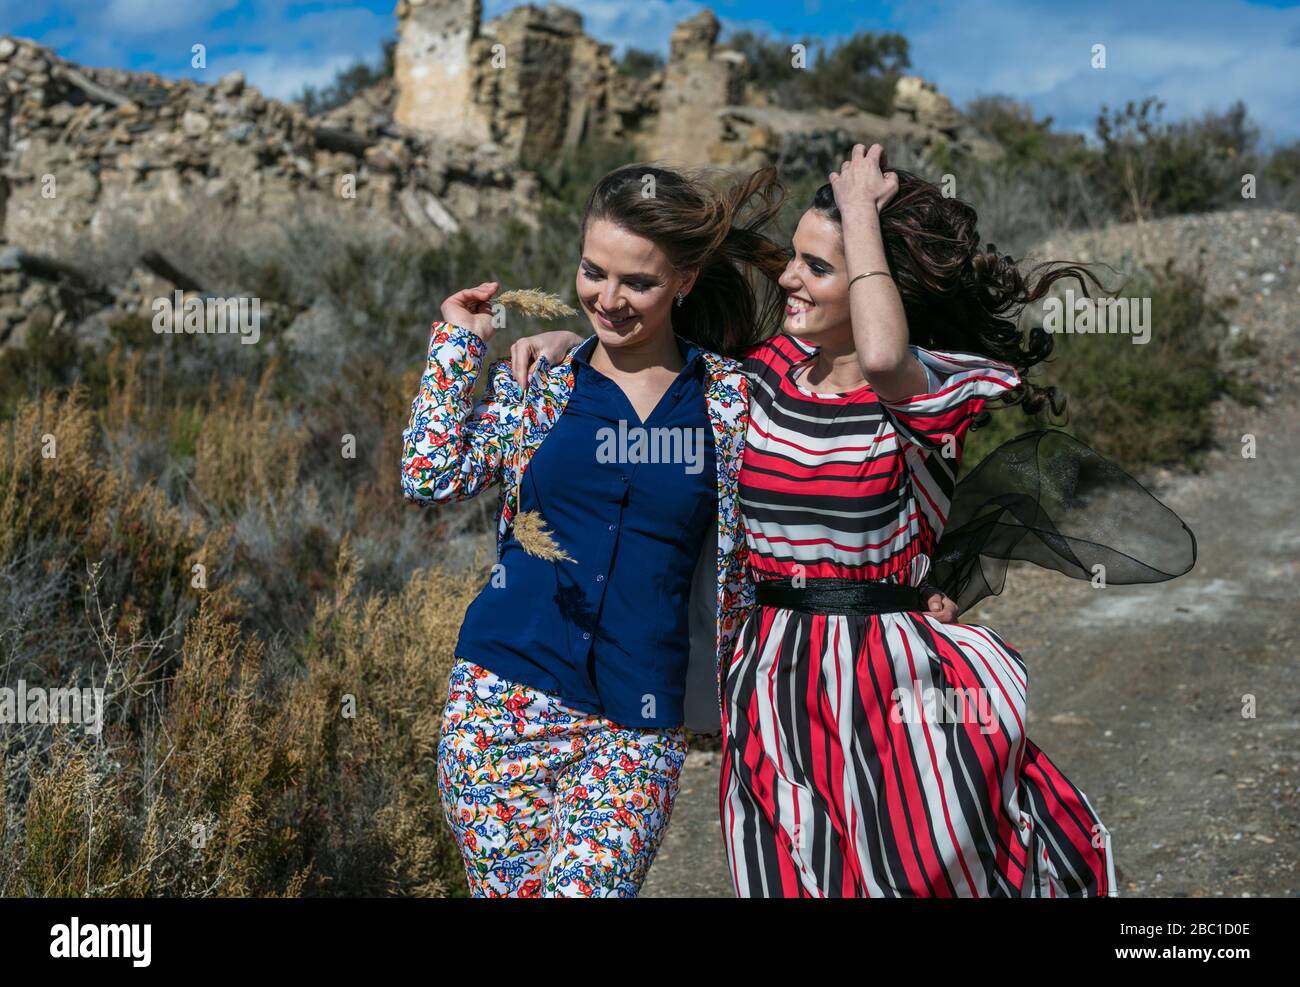 Two fashionable friends in rural scene, Almeria Spain Stock Photo